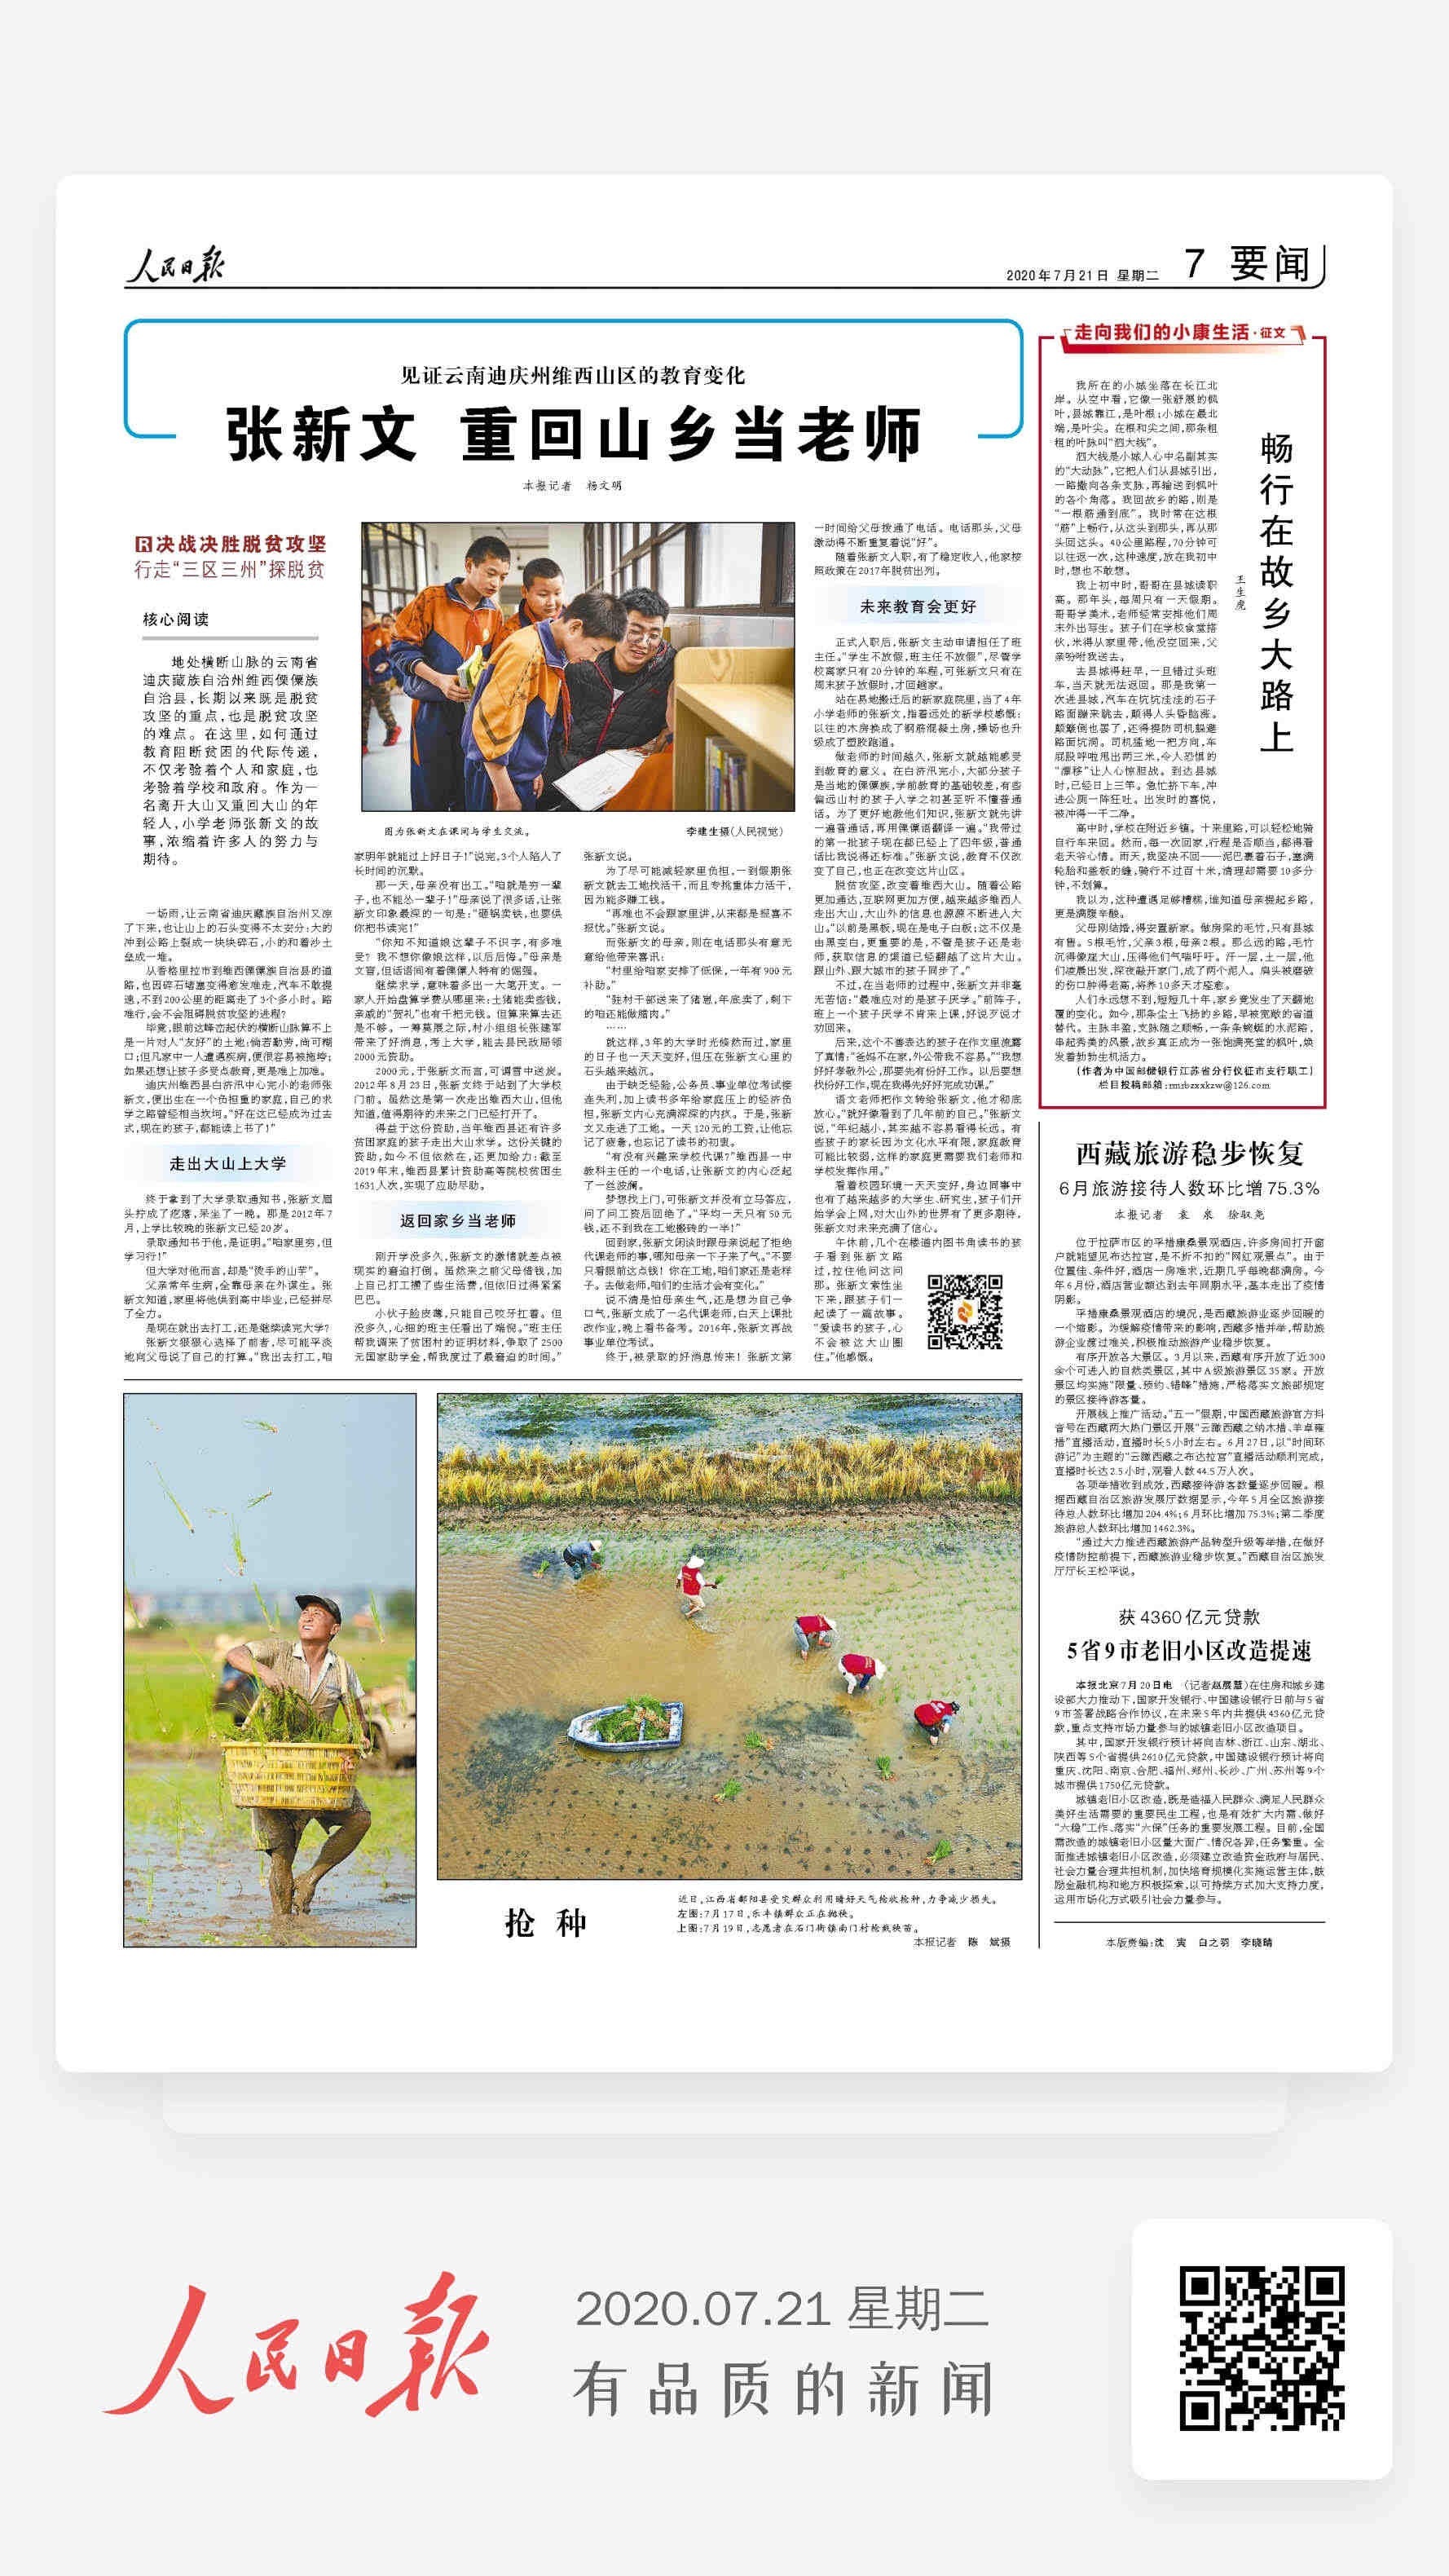 7月21日 人民日报要闻版头条点赞重回大山的年轻教师张新文